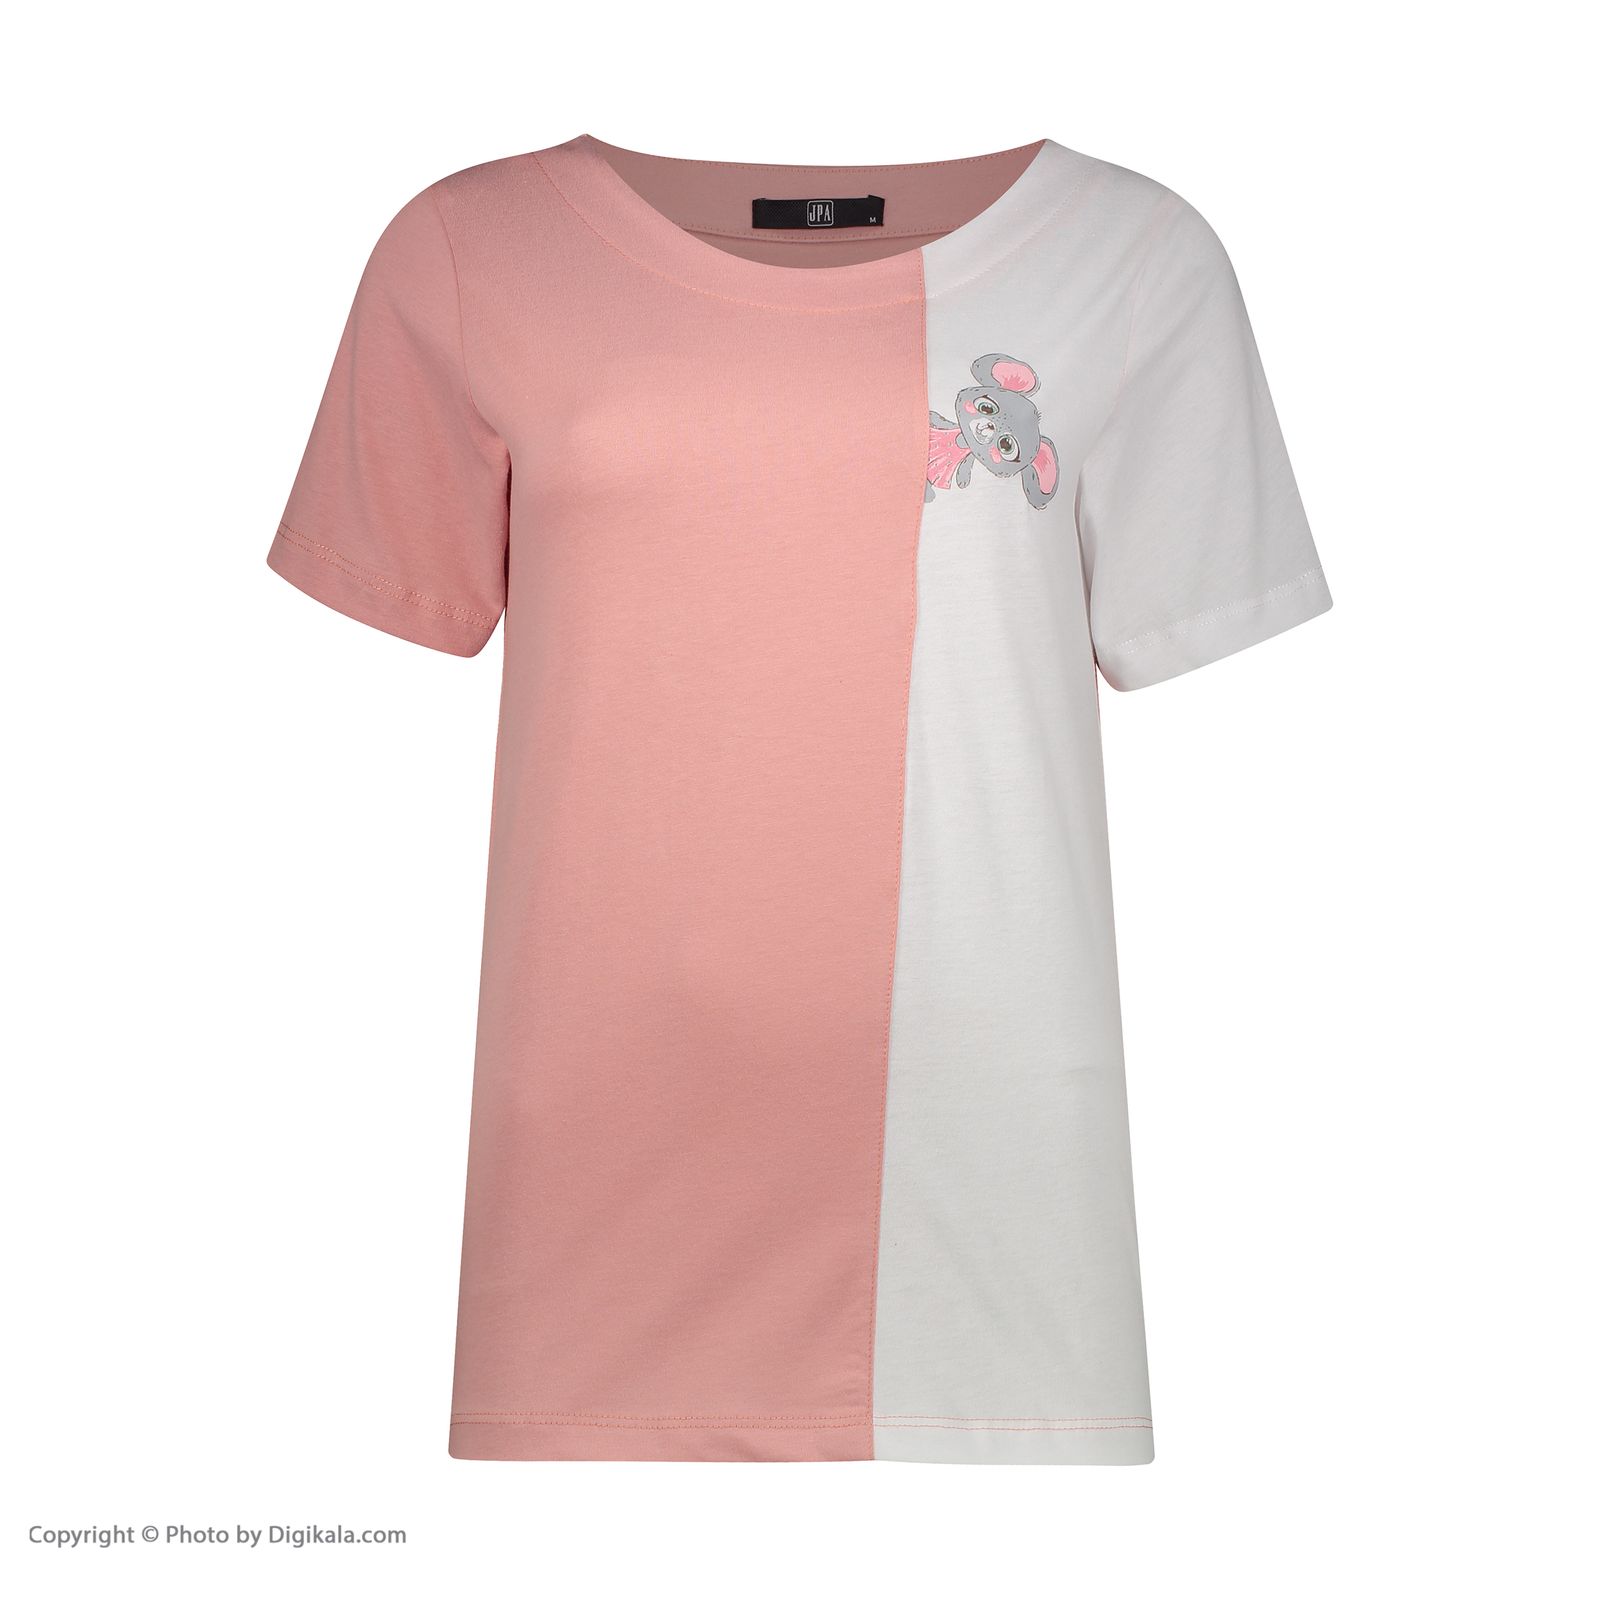 تی شرت زنانه جامه پوش آرا مدل 4012018376-86 -  - 2